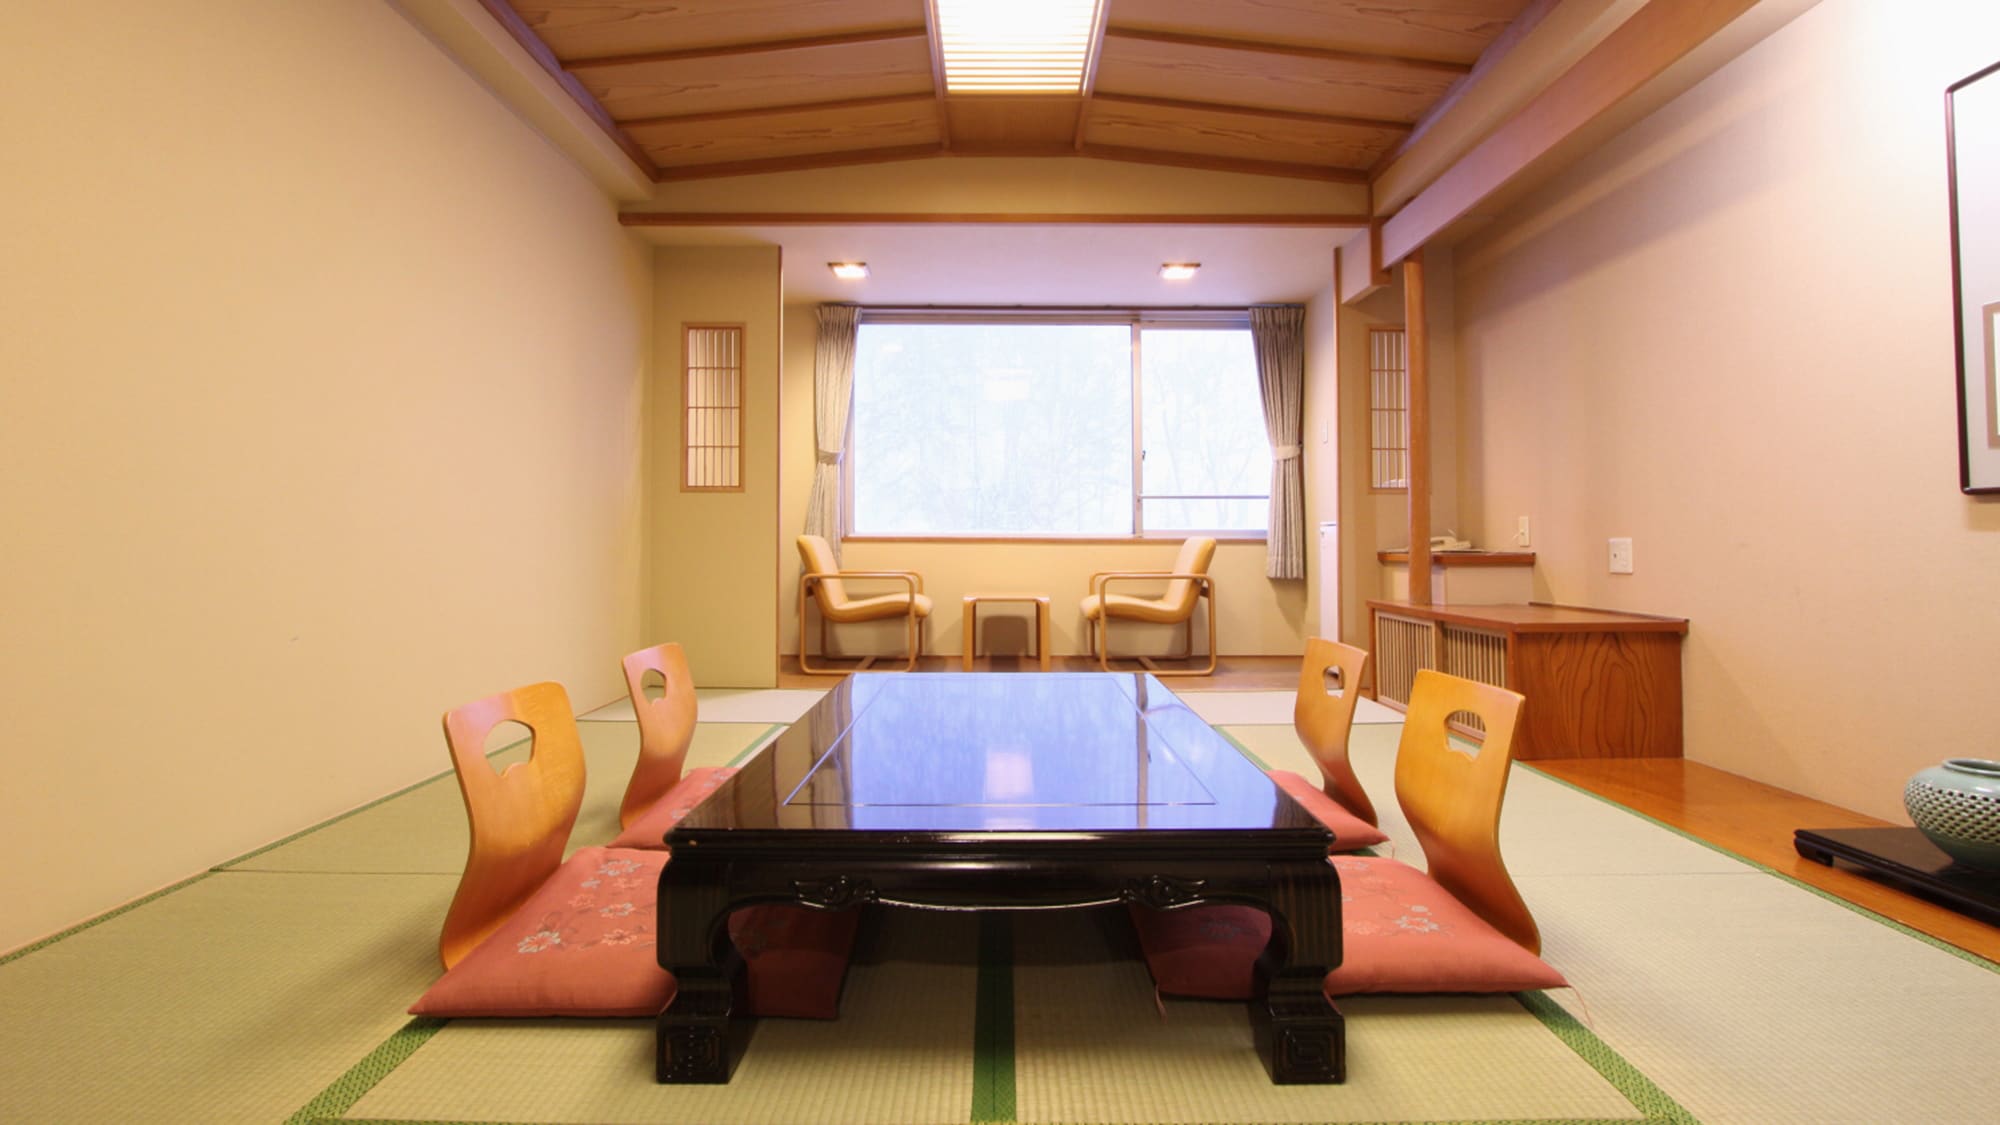 【일본식 방】 한가로이 편히 느껴지려면 일본식 방을 추천 ♪